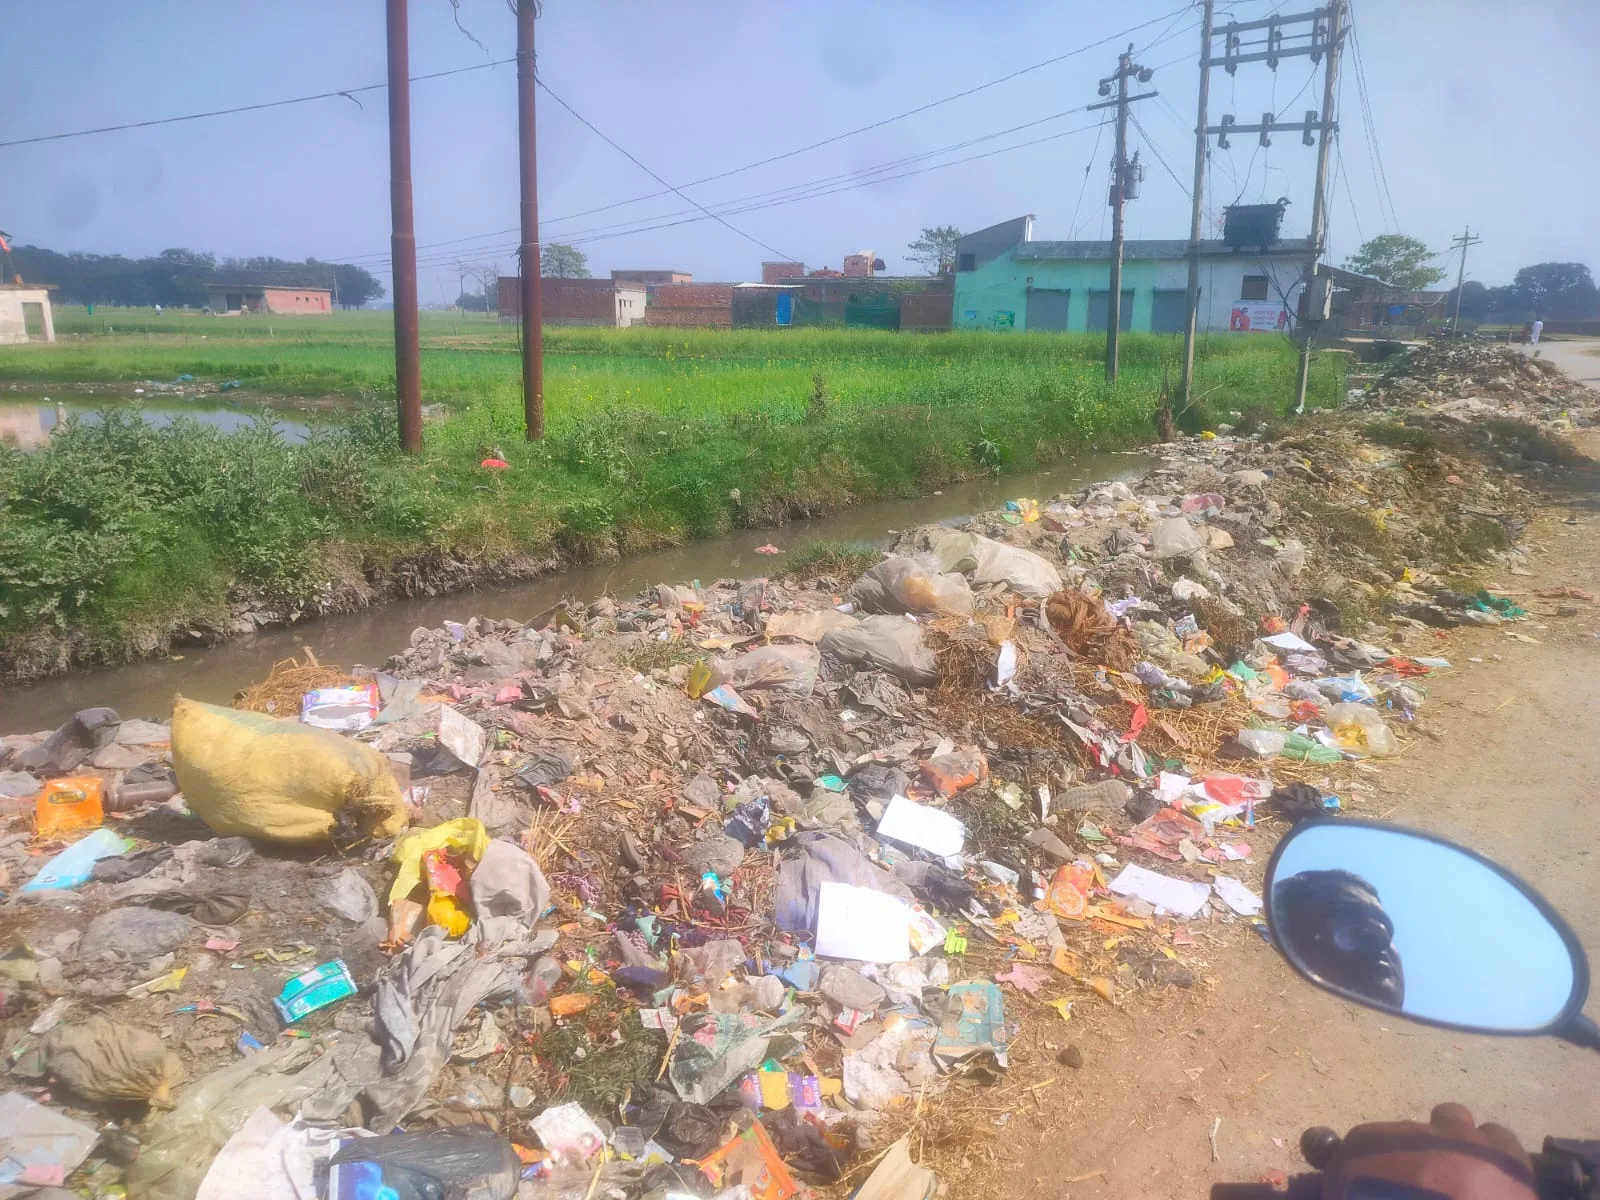 बुड्ढी खास में सड़क किनारे कचरे के ढेर से उठ रही है बदबू, ग्रामीणों को सता रहा है संक्रमण फैलने का खतरा | New India Times